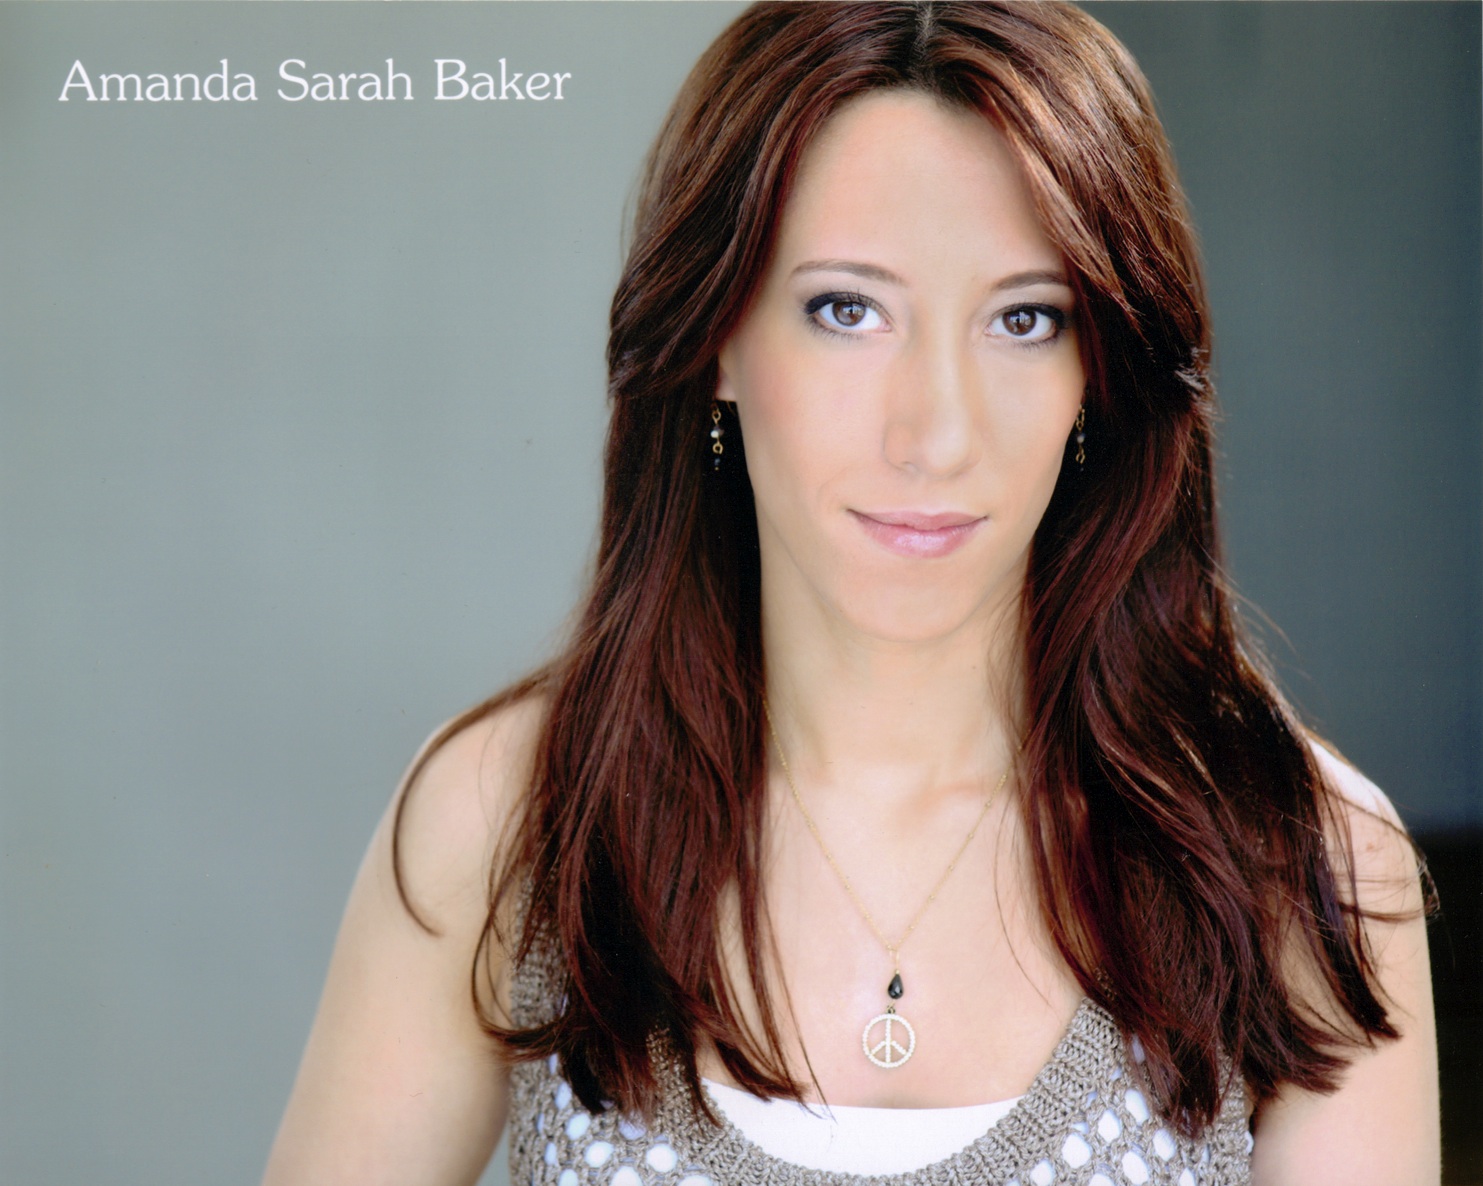 Amanda Sarah Baker